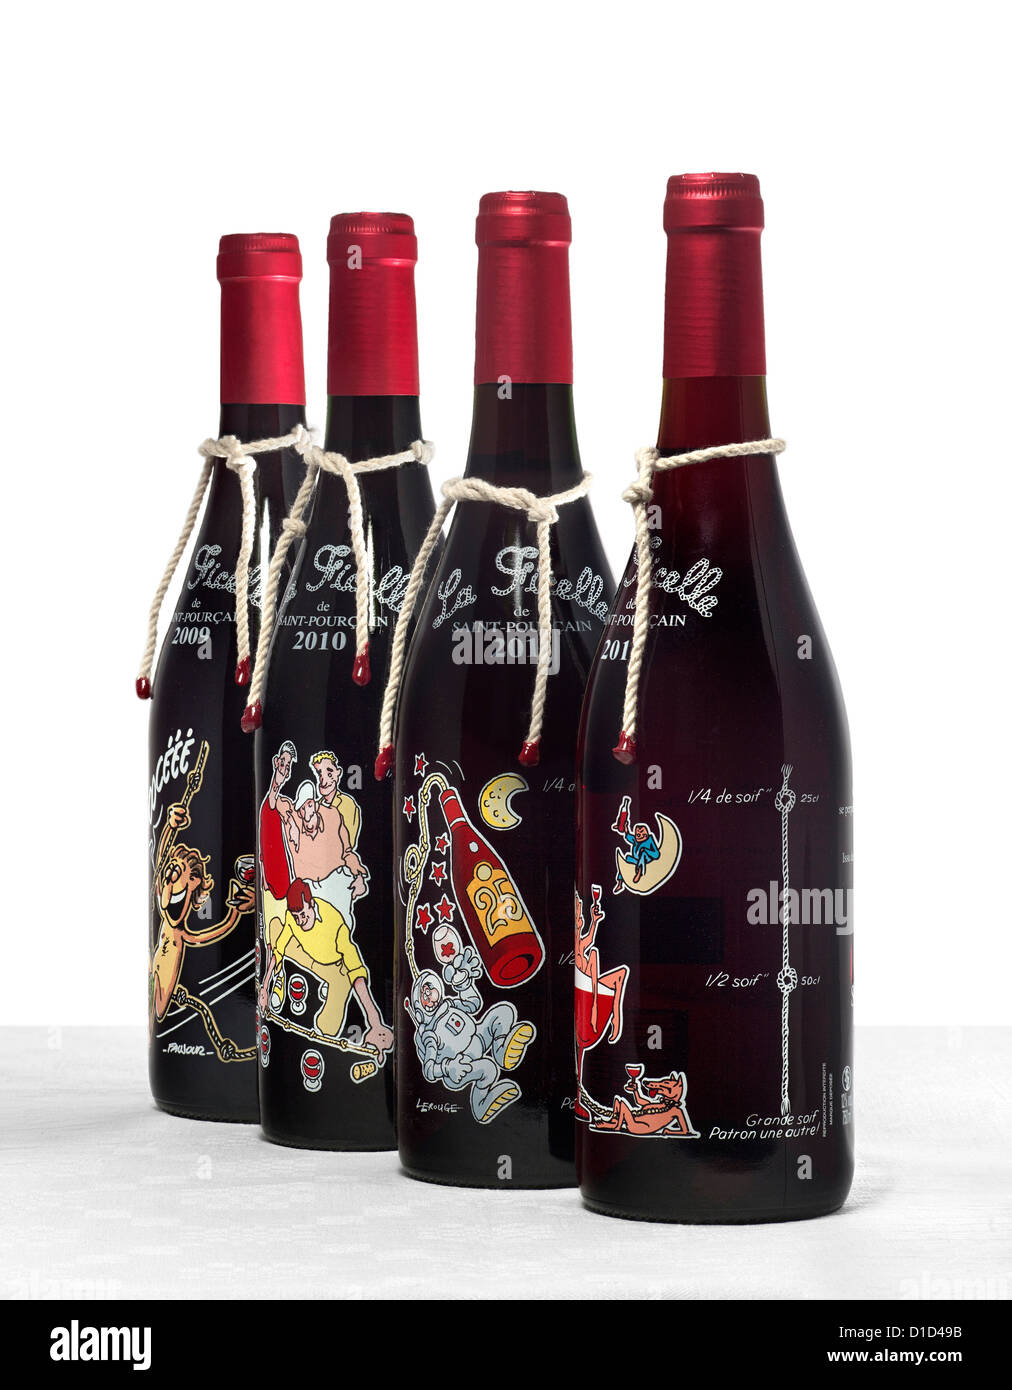 Saint Pourçain bouteilles de vin rouge nouveau dont le nom est "La Chaîne". Bouteilles de vin rouge primeur de St Pourçain. Banque D'Images